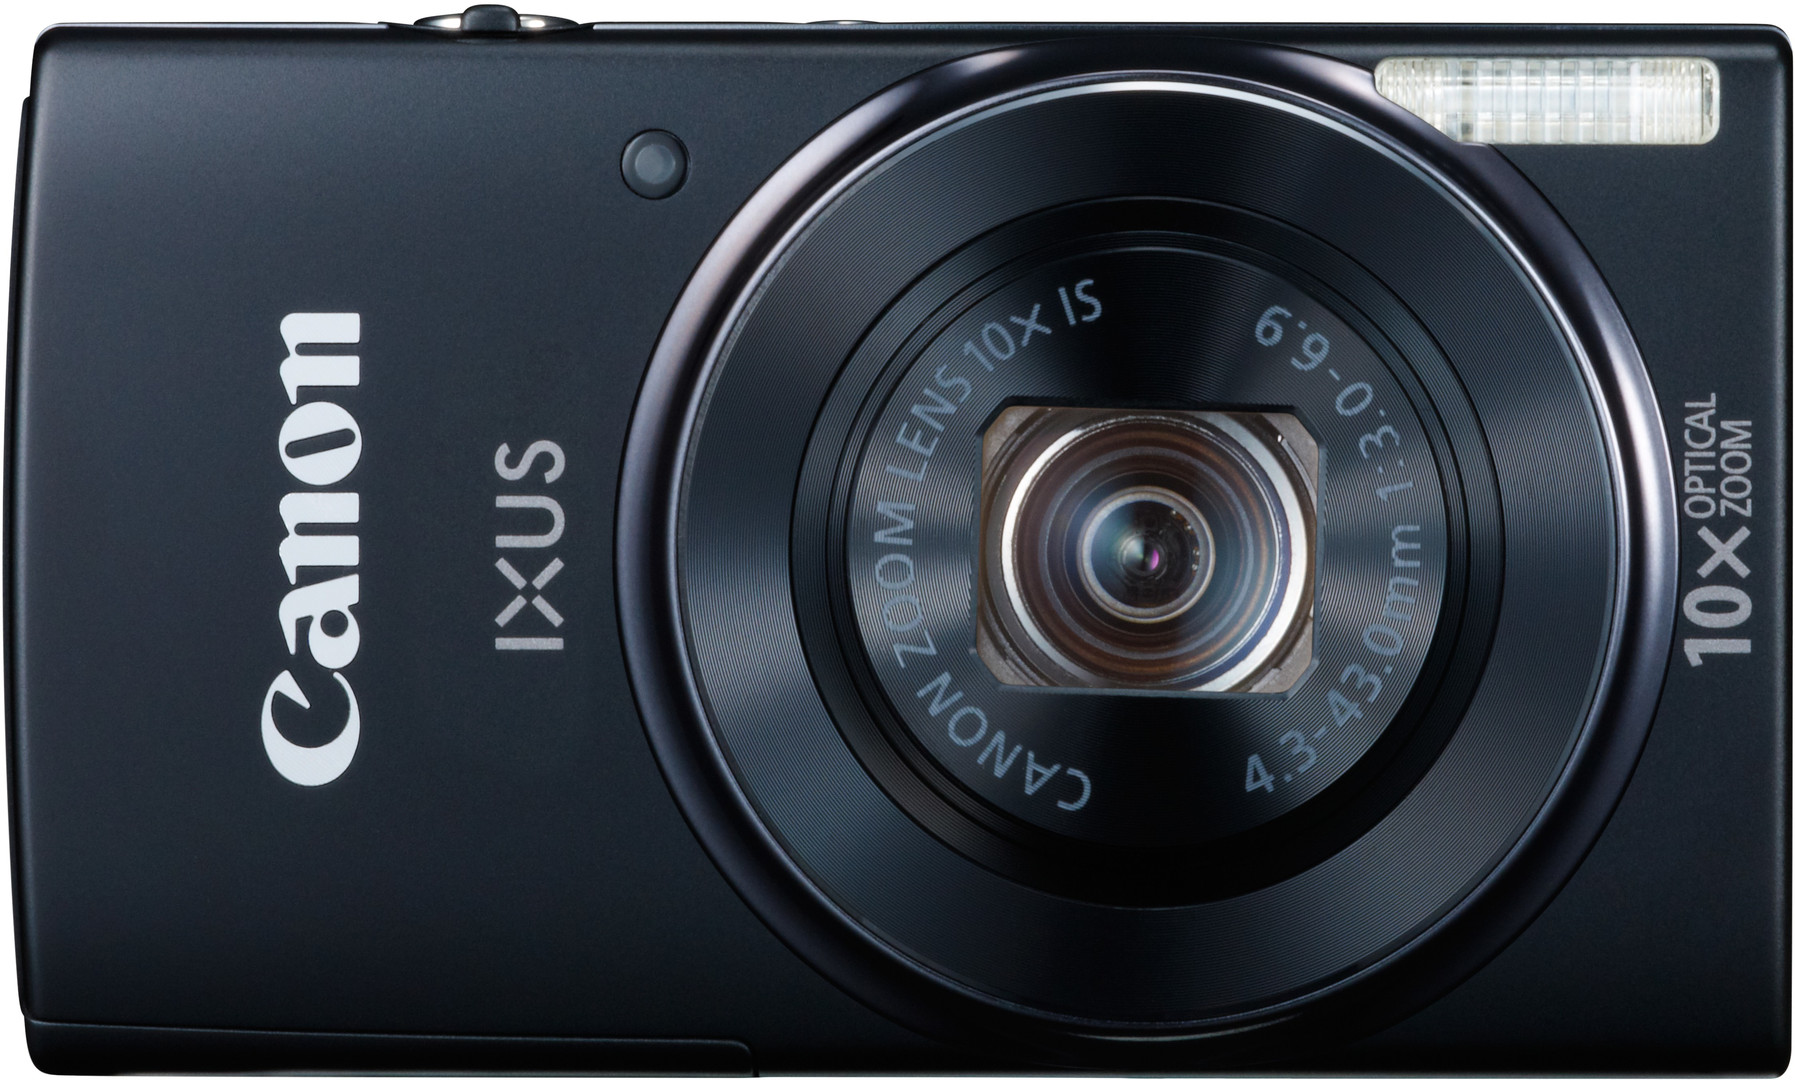 Canon IXUS 155 HS thuộc dòng máy ảnh giá rẻ chất lượng cao